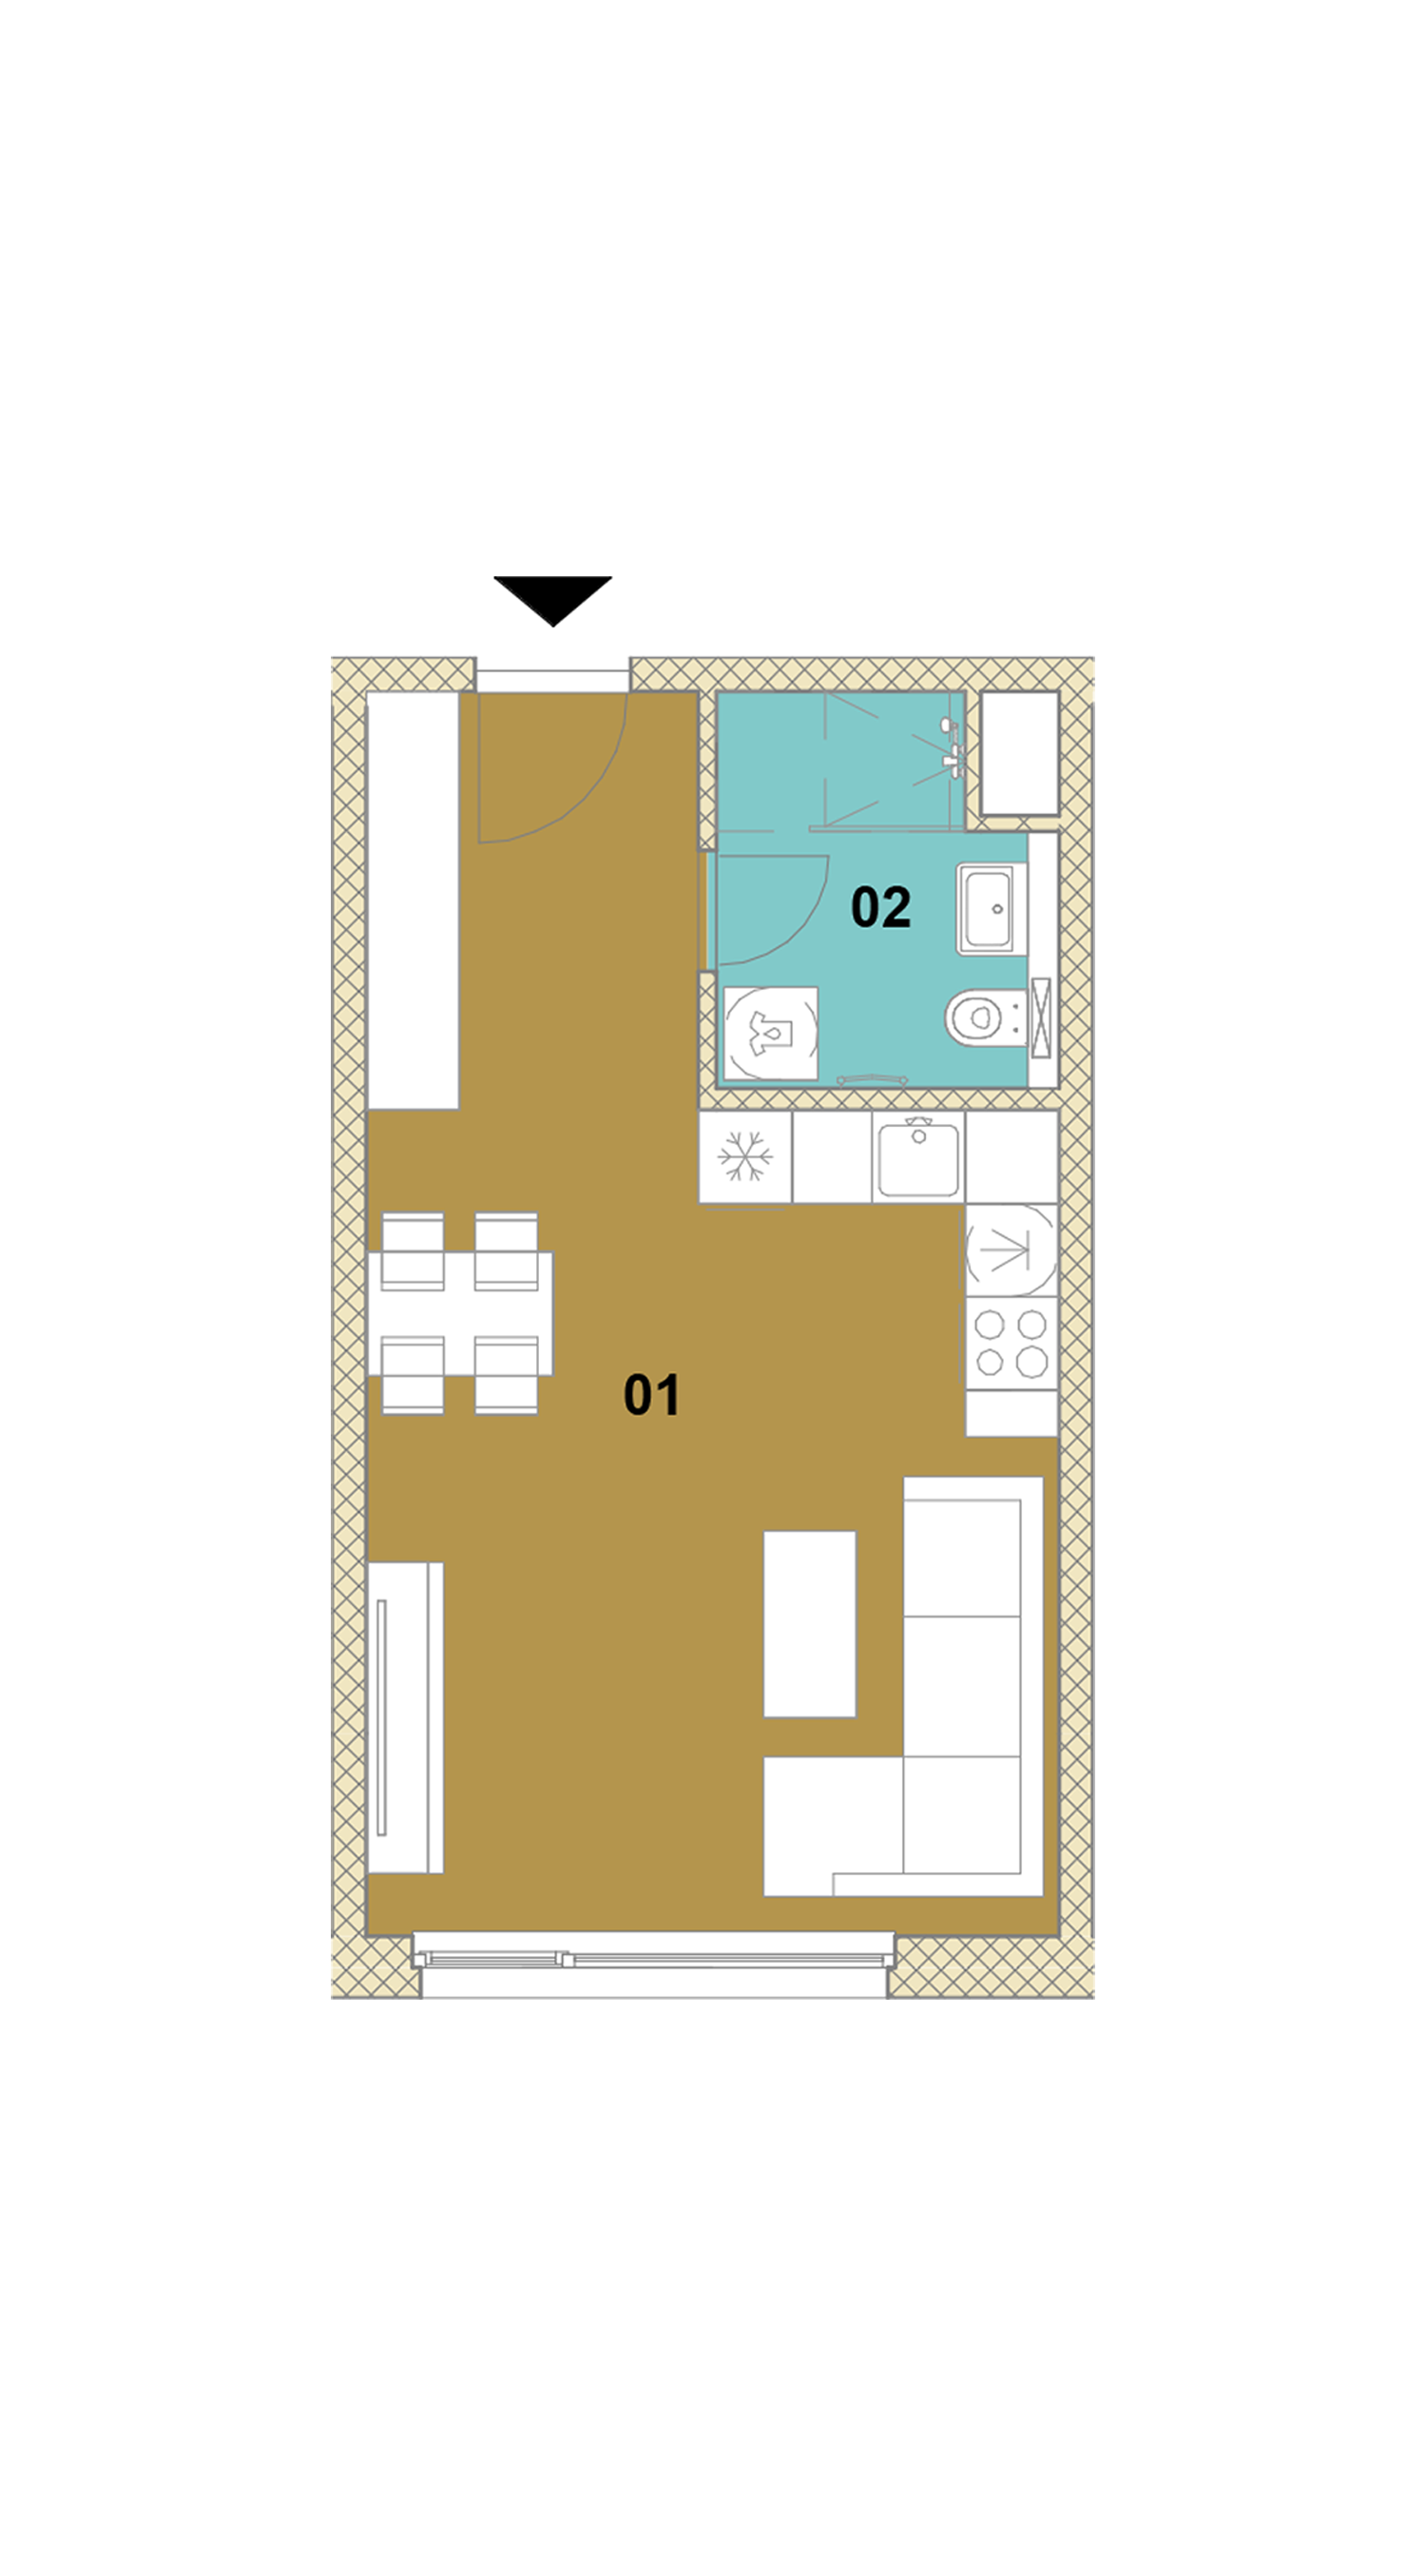 Jednoizbový byt D2-403